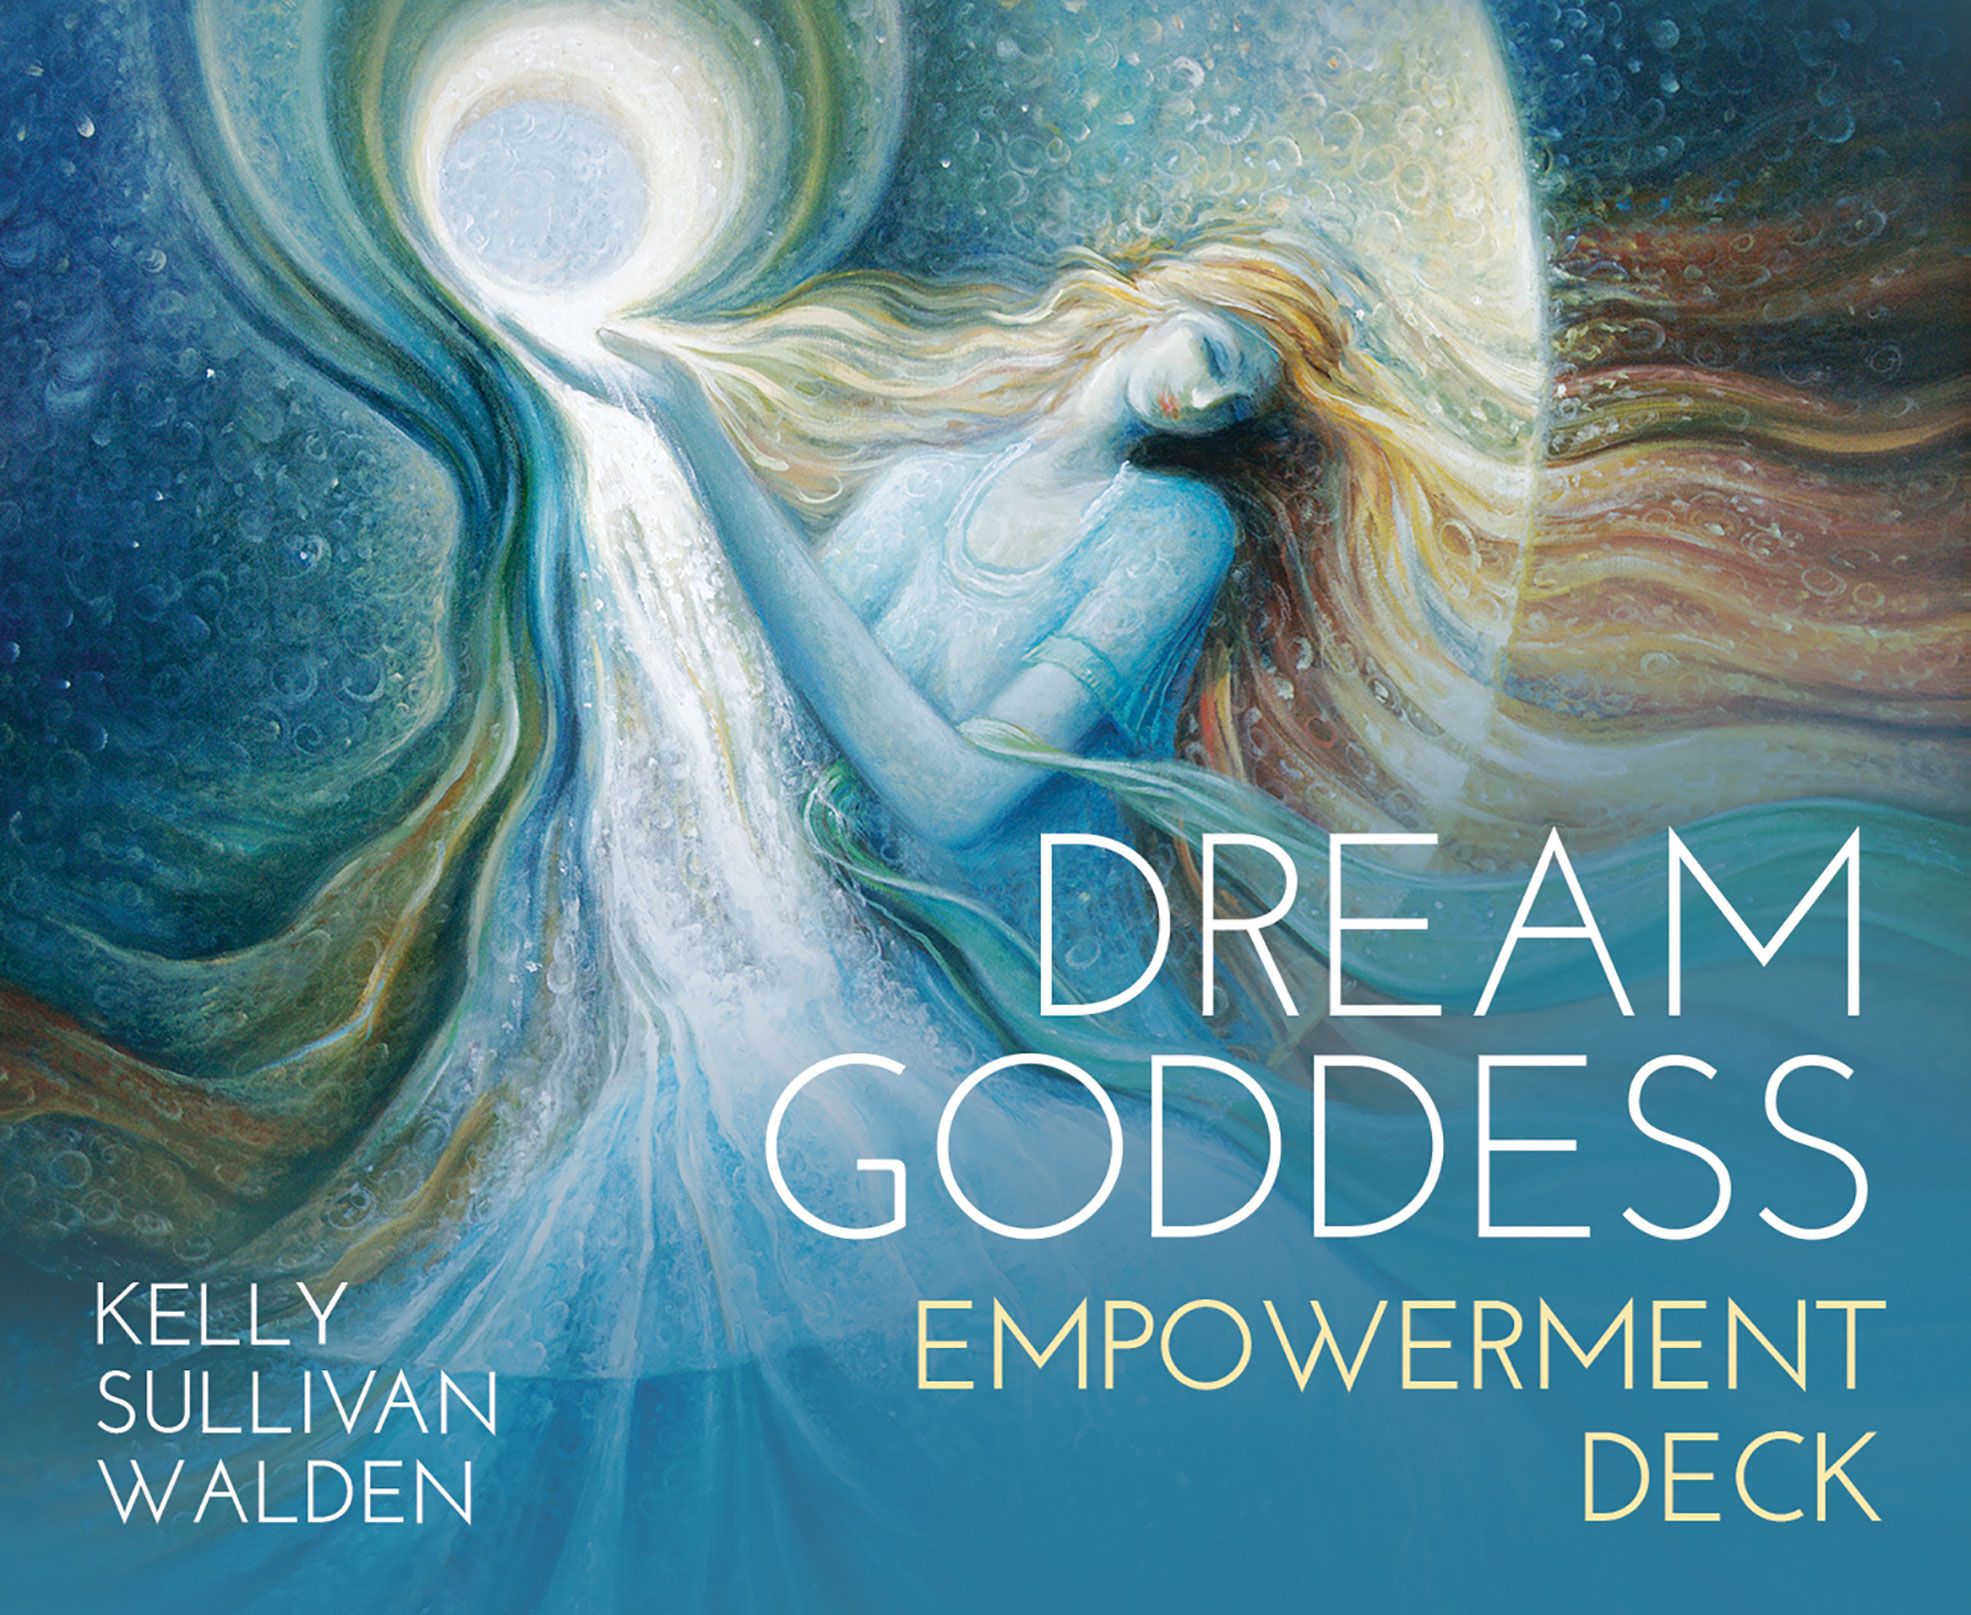 Dream Goddess Empowerment Deck By Kelly Sullivan Walden